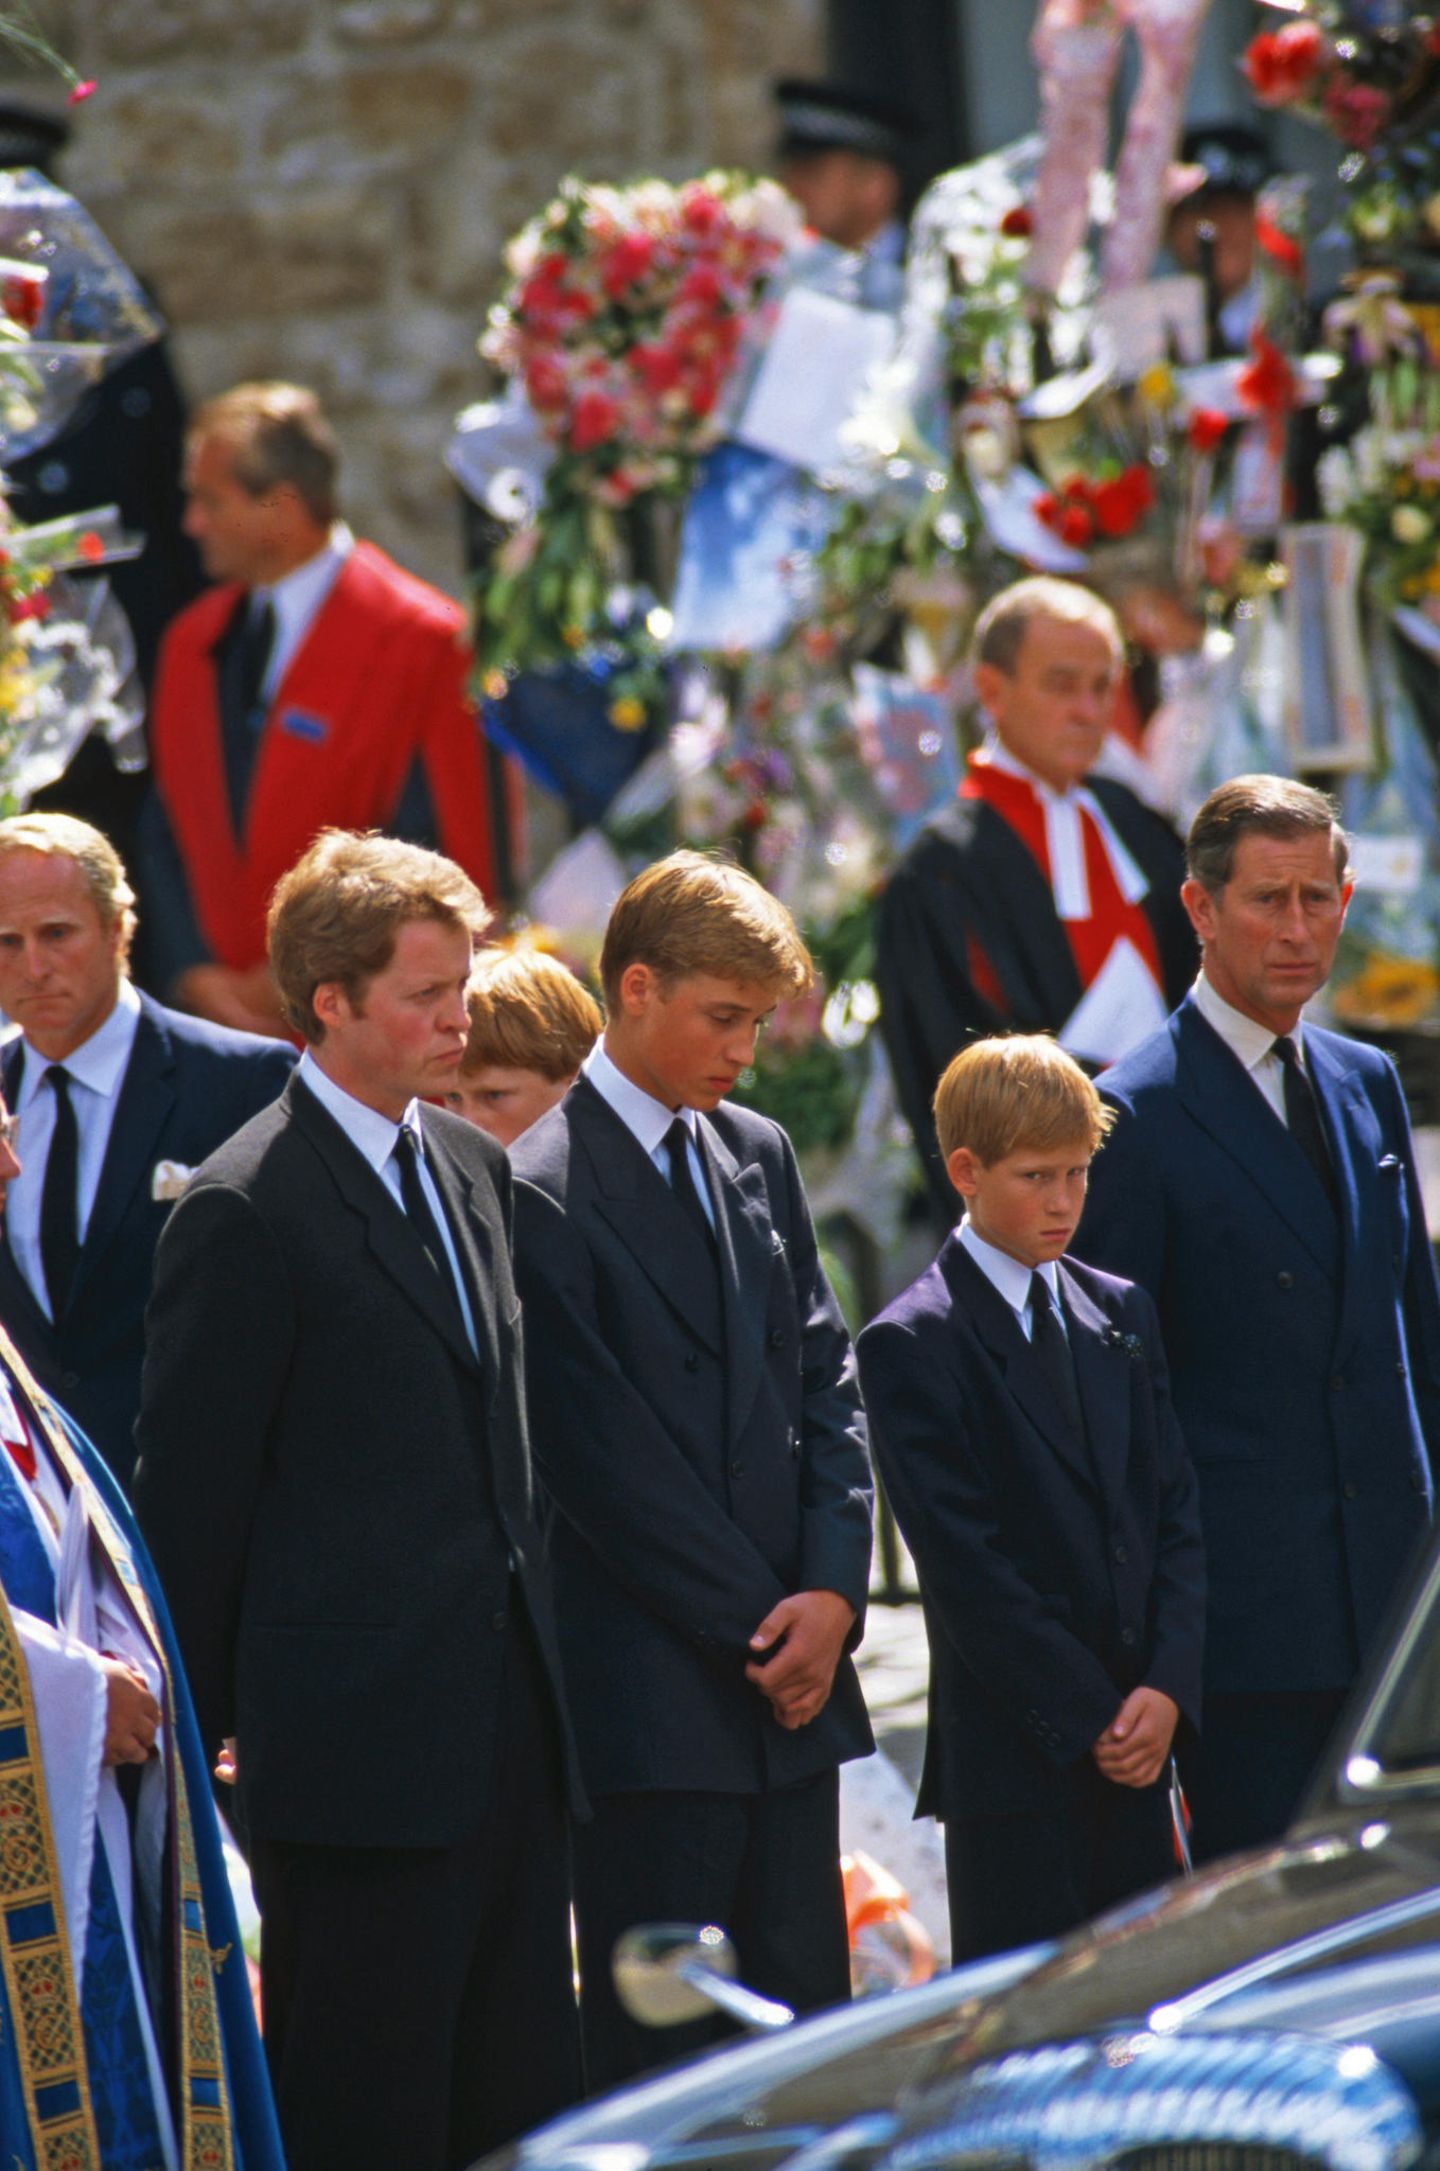 Ein Foto, das Herzen auf der ganzen Welt bricht: Prinz William und Prinz Harry stehen, flankiert von ihrem Onkel Charles Earl Spencer und ihrem Vater Prinz Charles, vor dem Sarg ihrer Mutter Prinzessin Diana. 